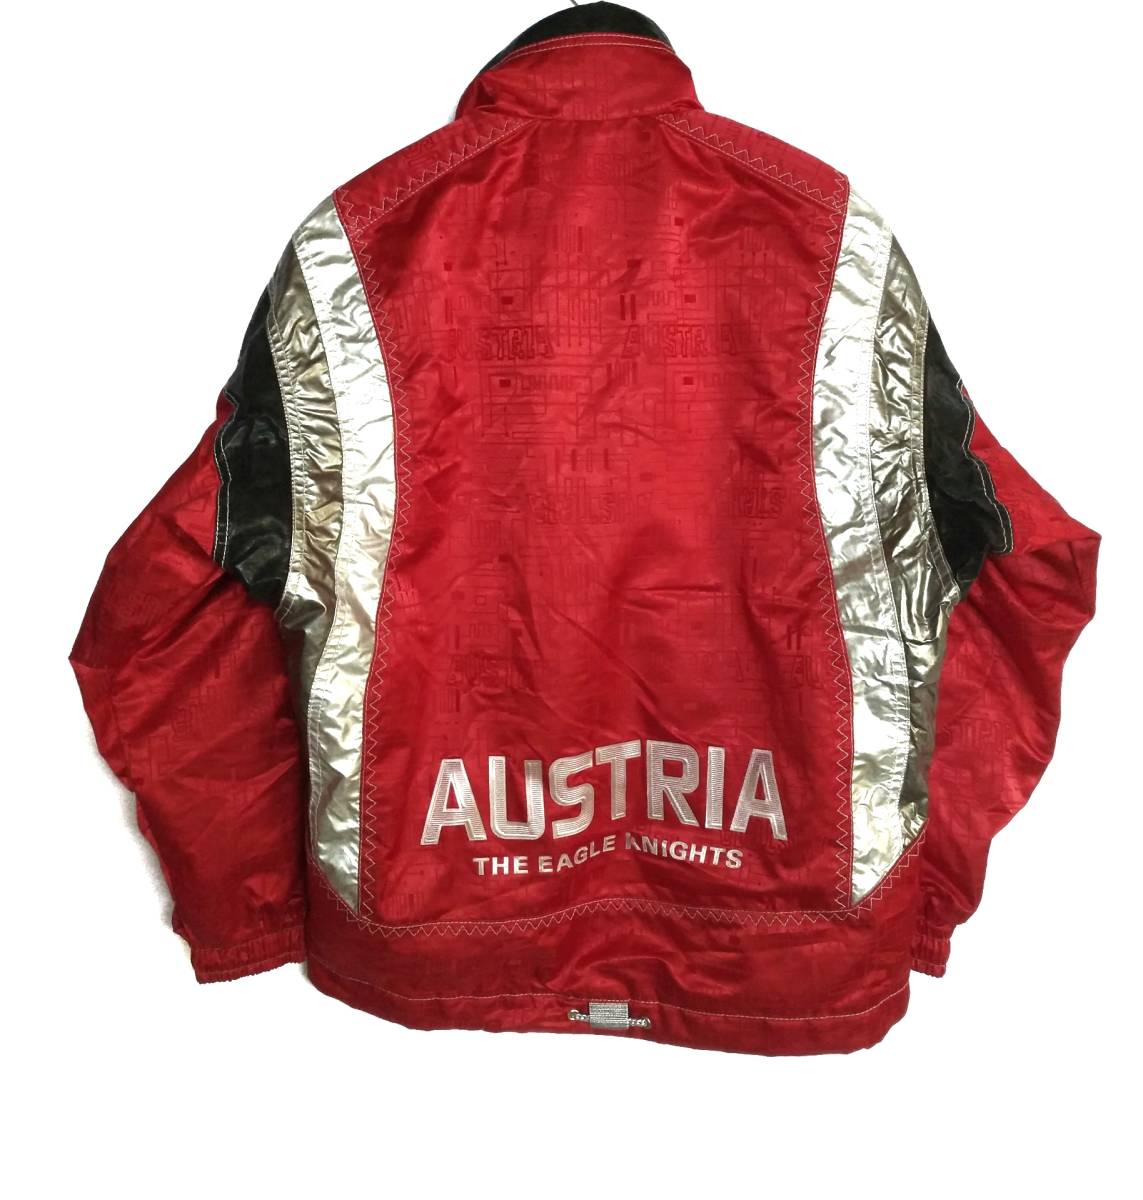 アシックス ASICS オーストリア代表 スキー ナショナルチーム ナイロン シェル ジャケット S 日本製 赤 レッド メンズ Austria  ski ウエア